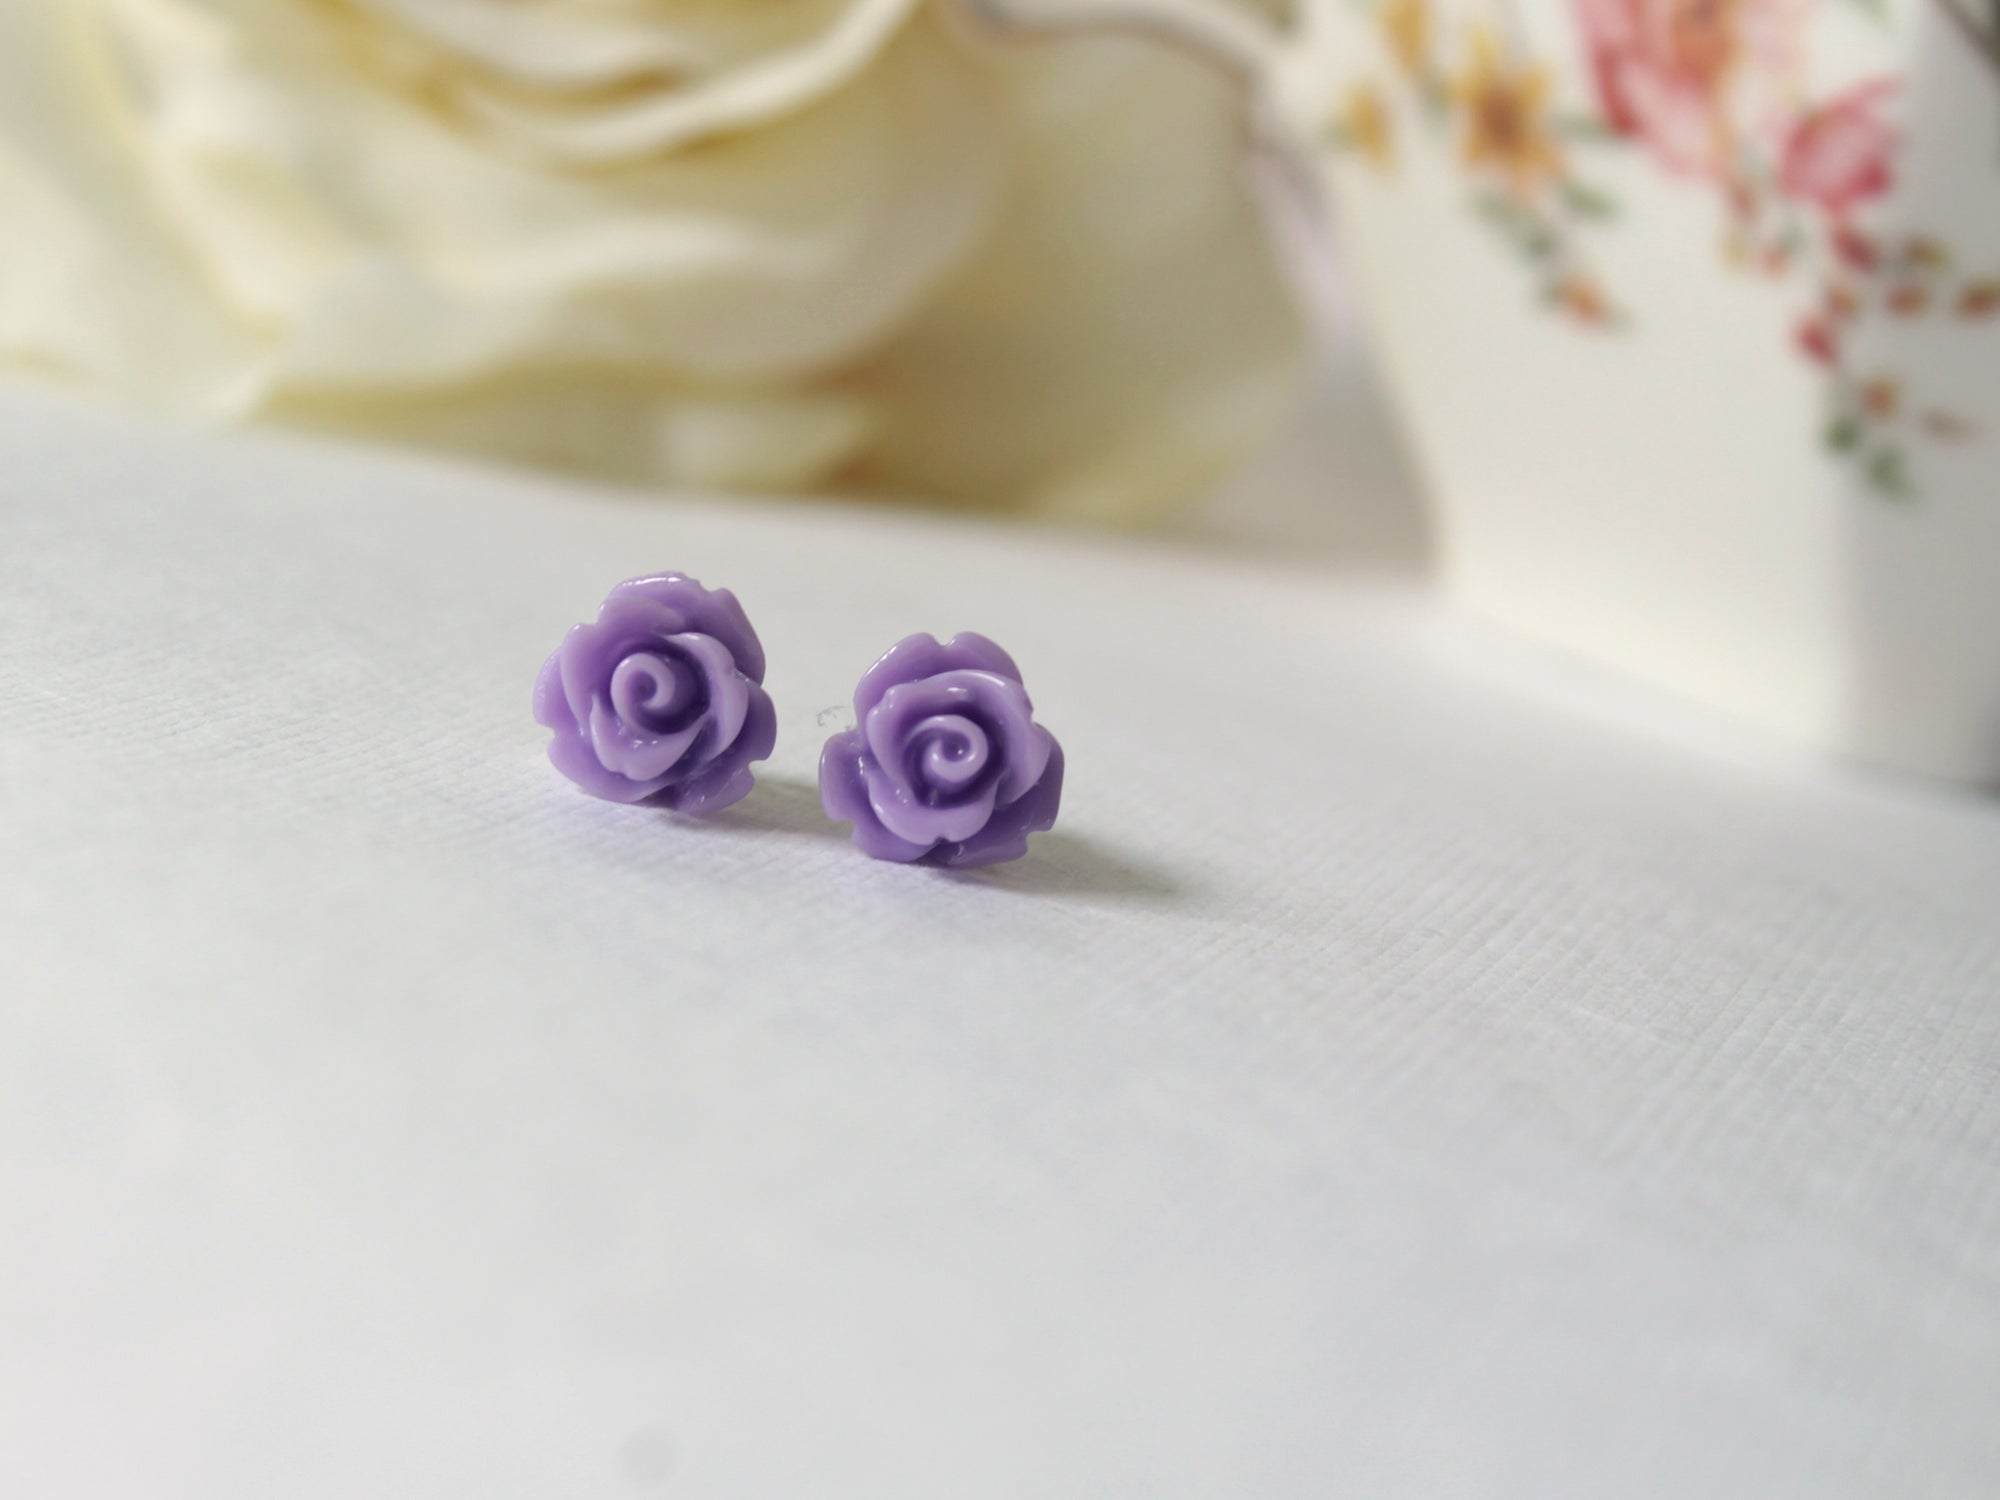 Single Bloom Rose Stud Earrings in Violet